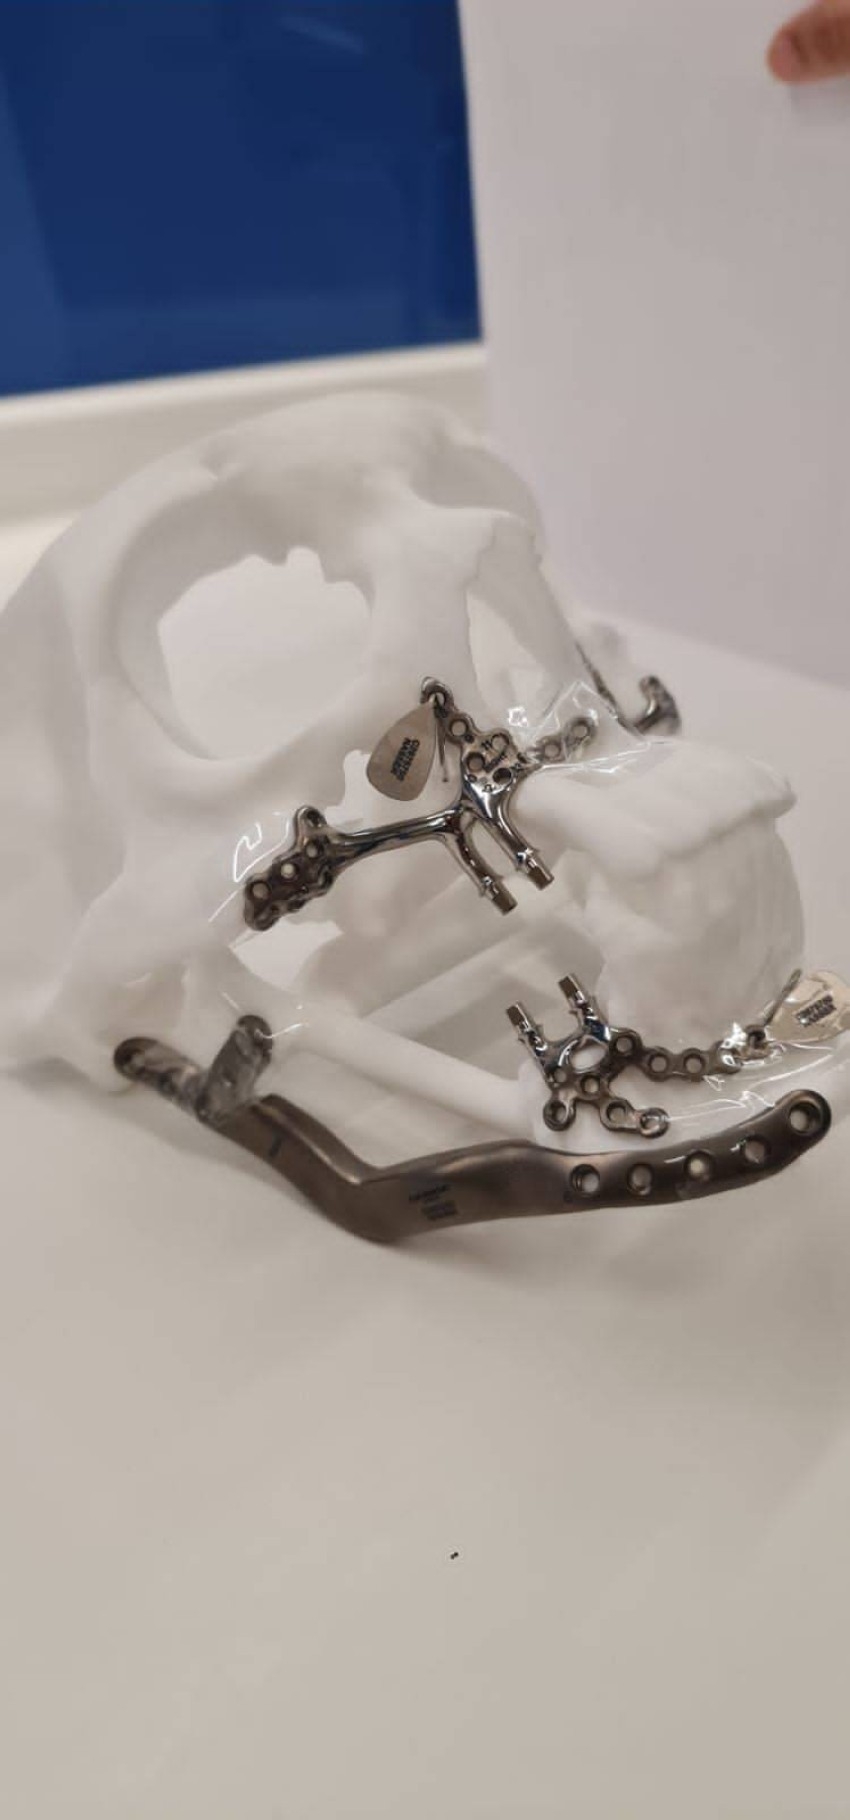 بناء عظام وجه مريض إماراتي بالطباعة 3D في دبي